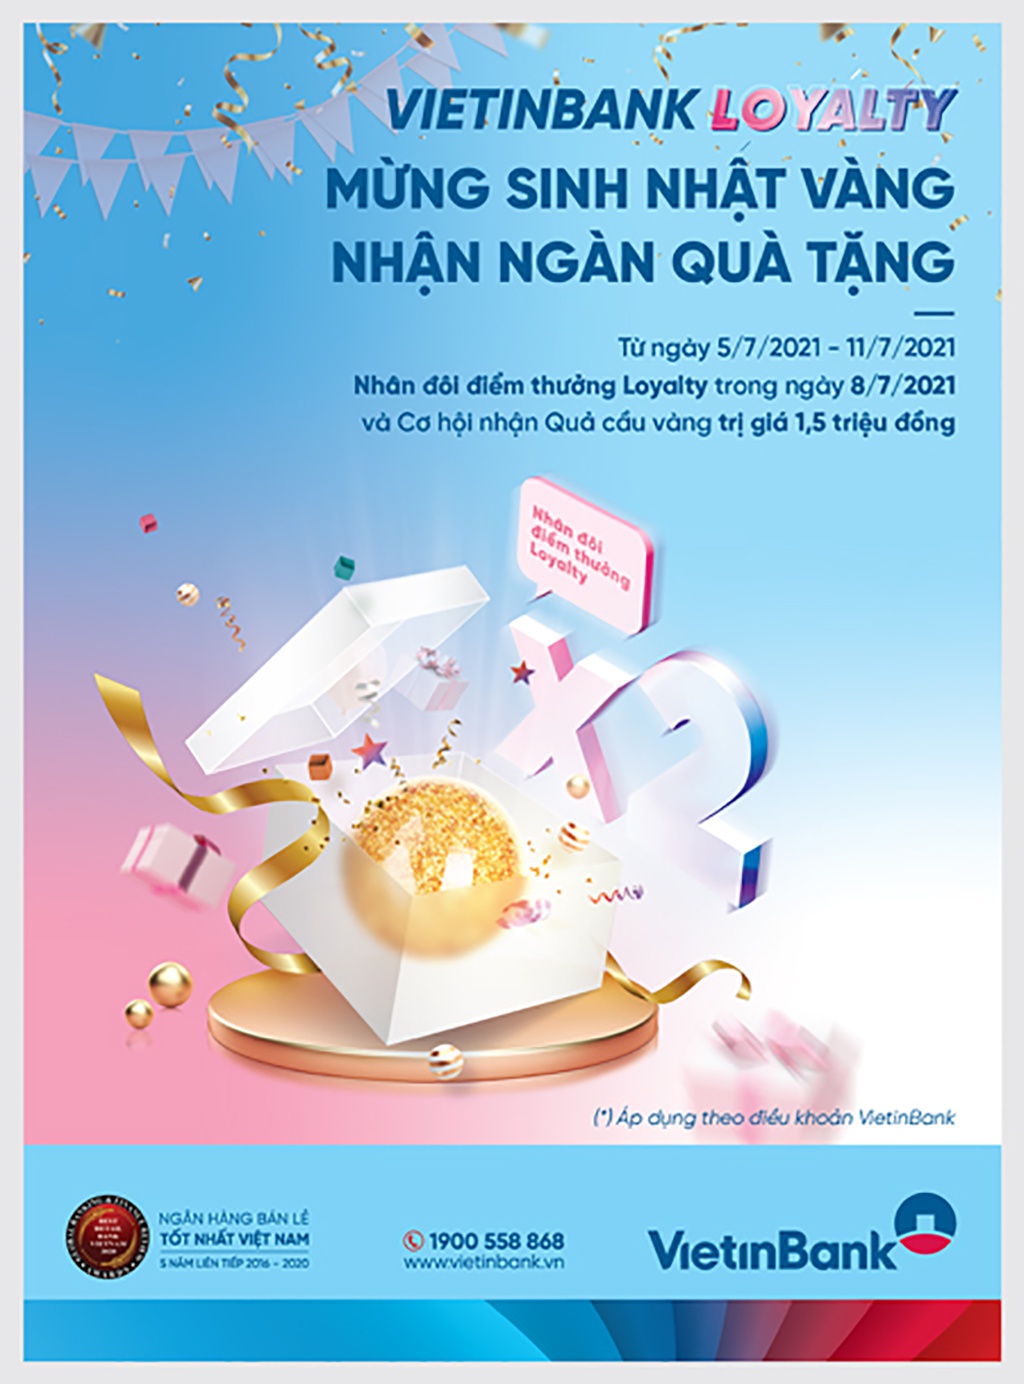 VietinBank Loyalty bùng nổ với chương trình khuyến mãi nhân dịp sinh nhật ngân hàng - ảnh 1